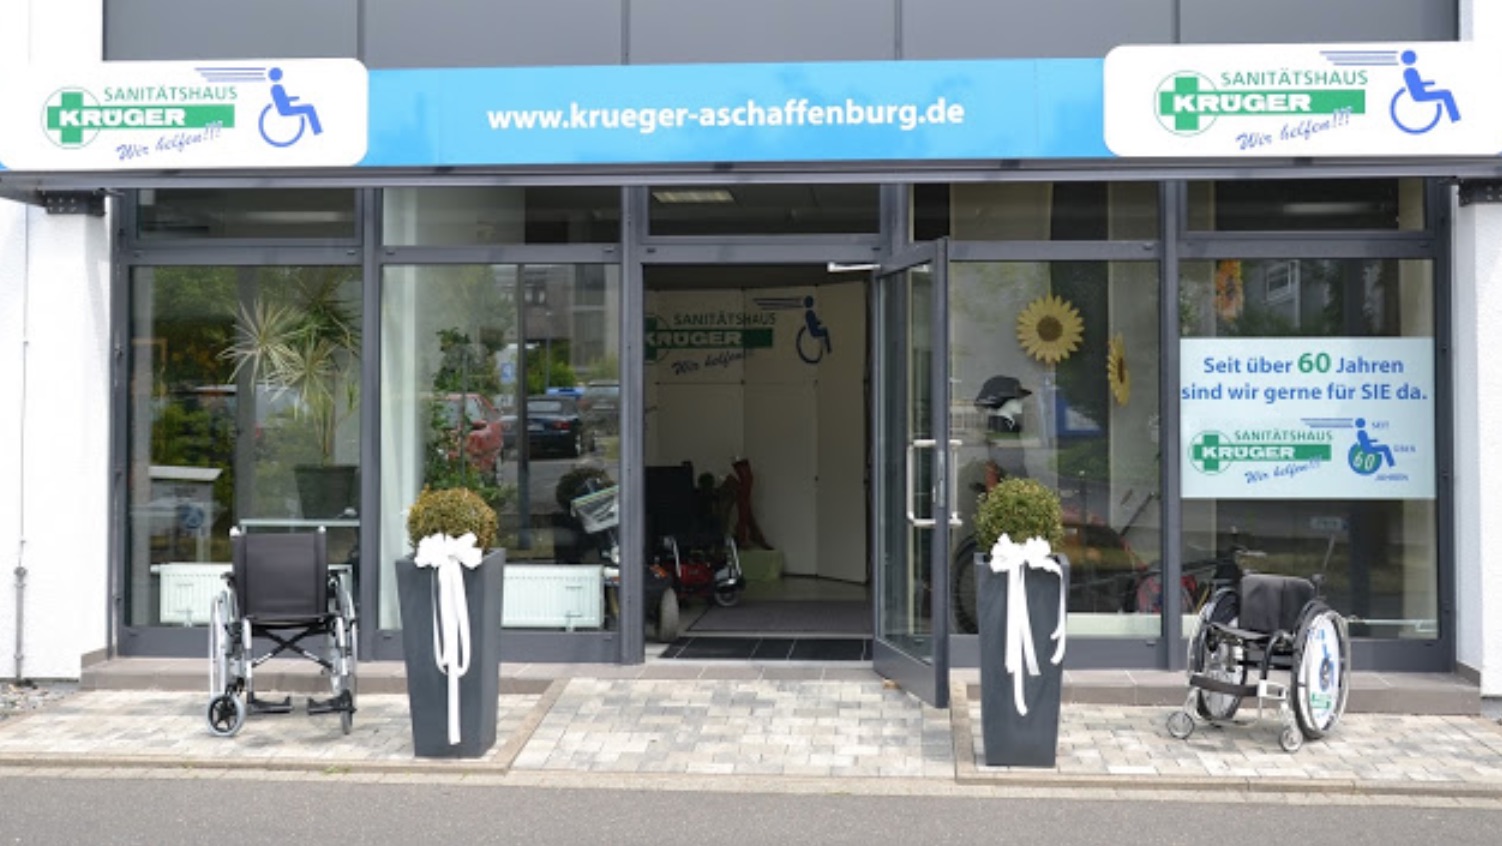 Sanitätshaus Krüger GmbH, Aschaffenburg